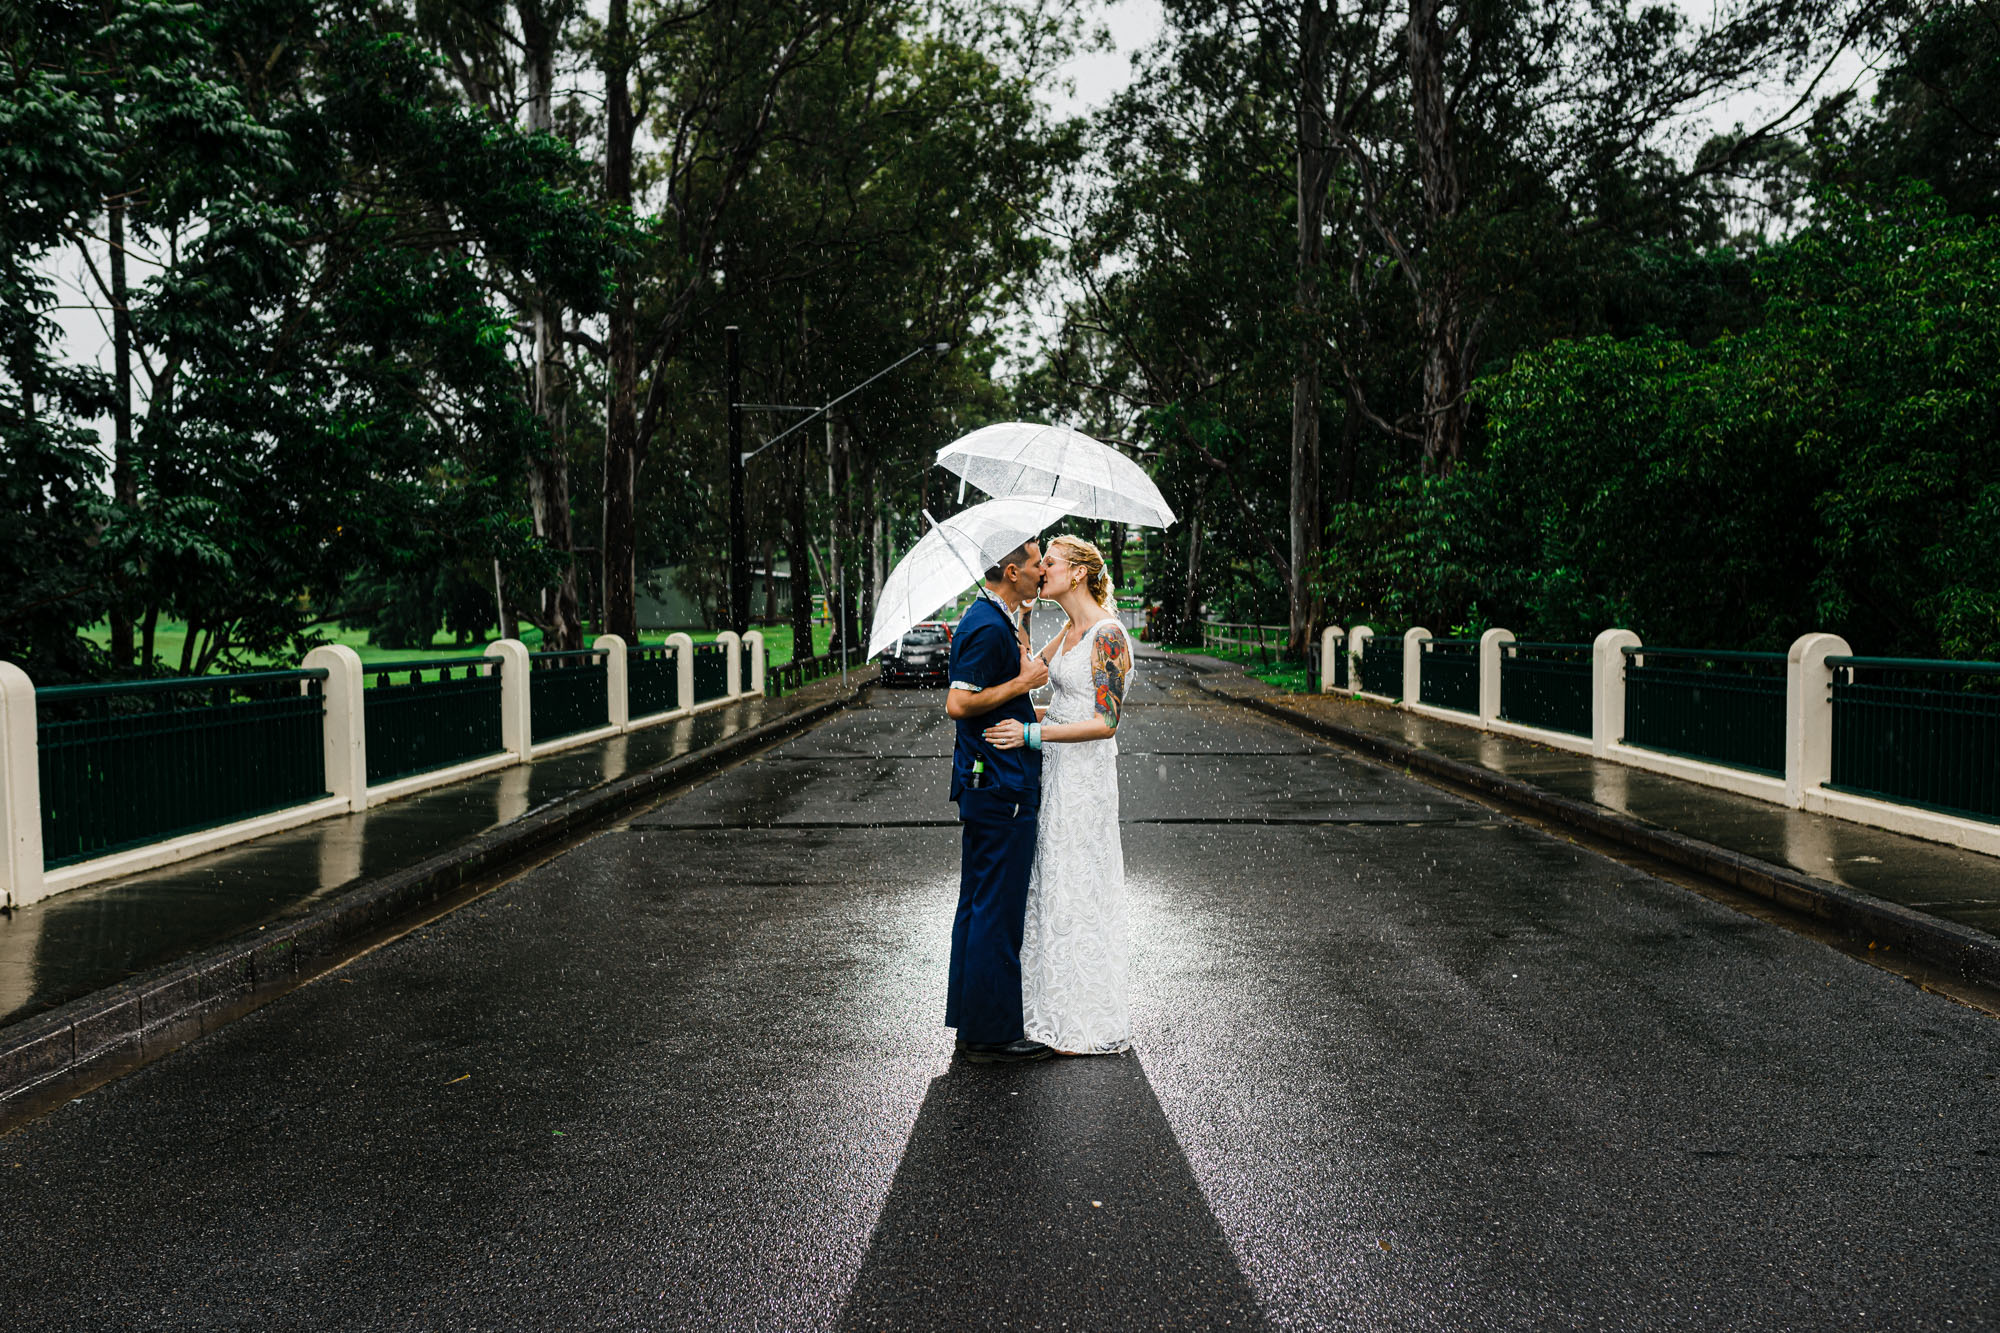 wedding photos on bridge in rain